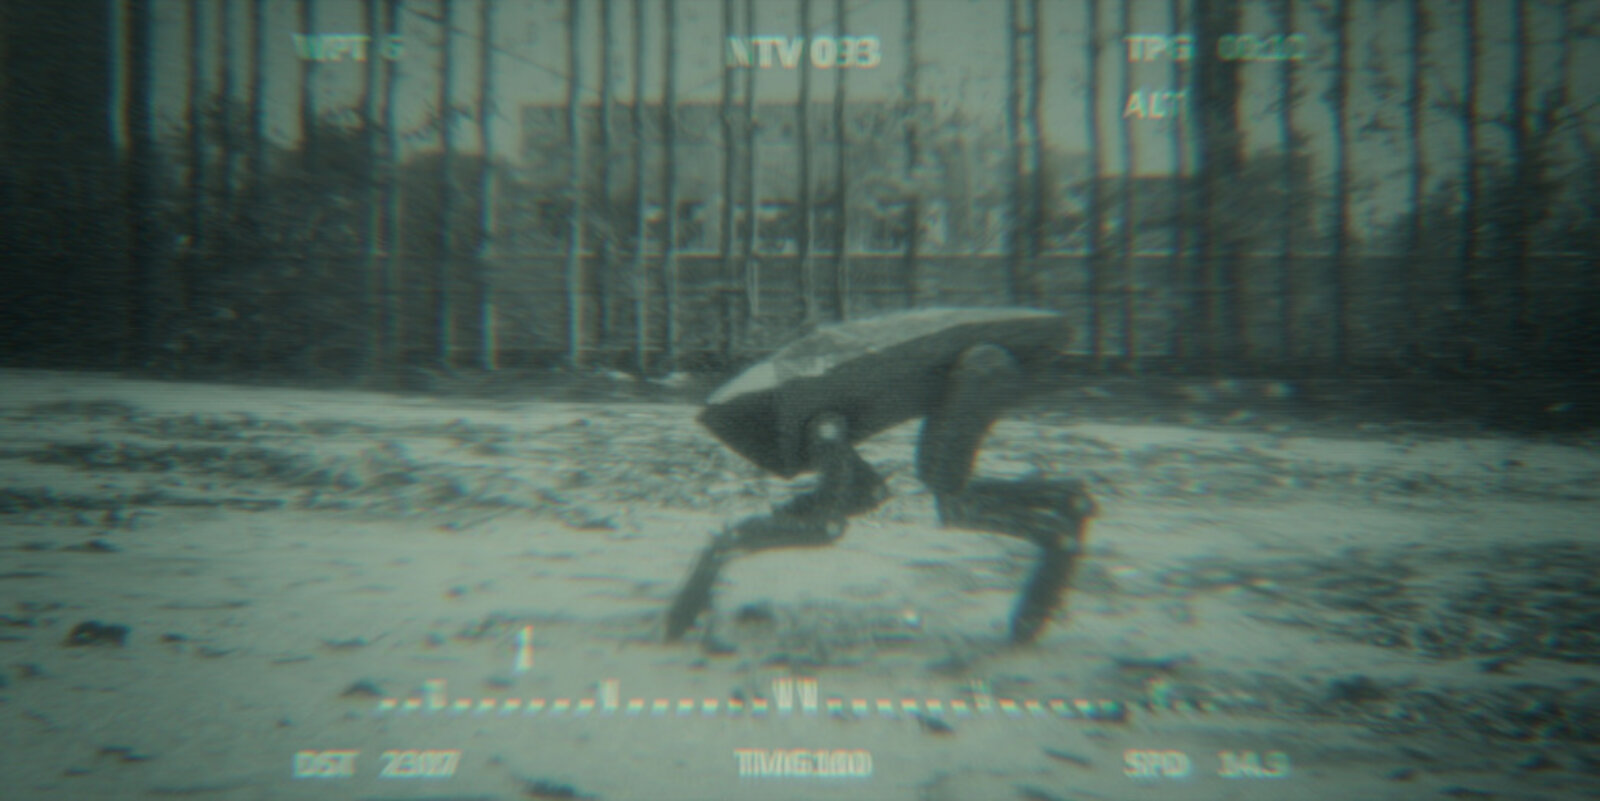 Ein Screenshot aus Black Mirror, Staffel 6: In einer VIsion sieht Nida die Robo-Killer-Hunde aus Metallkopf.